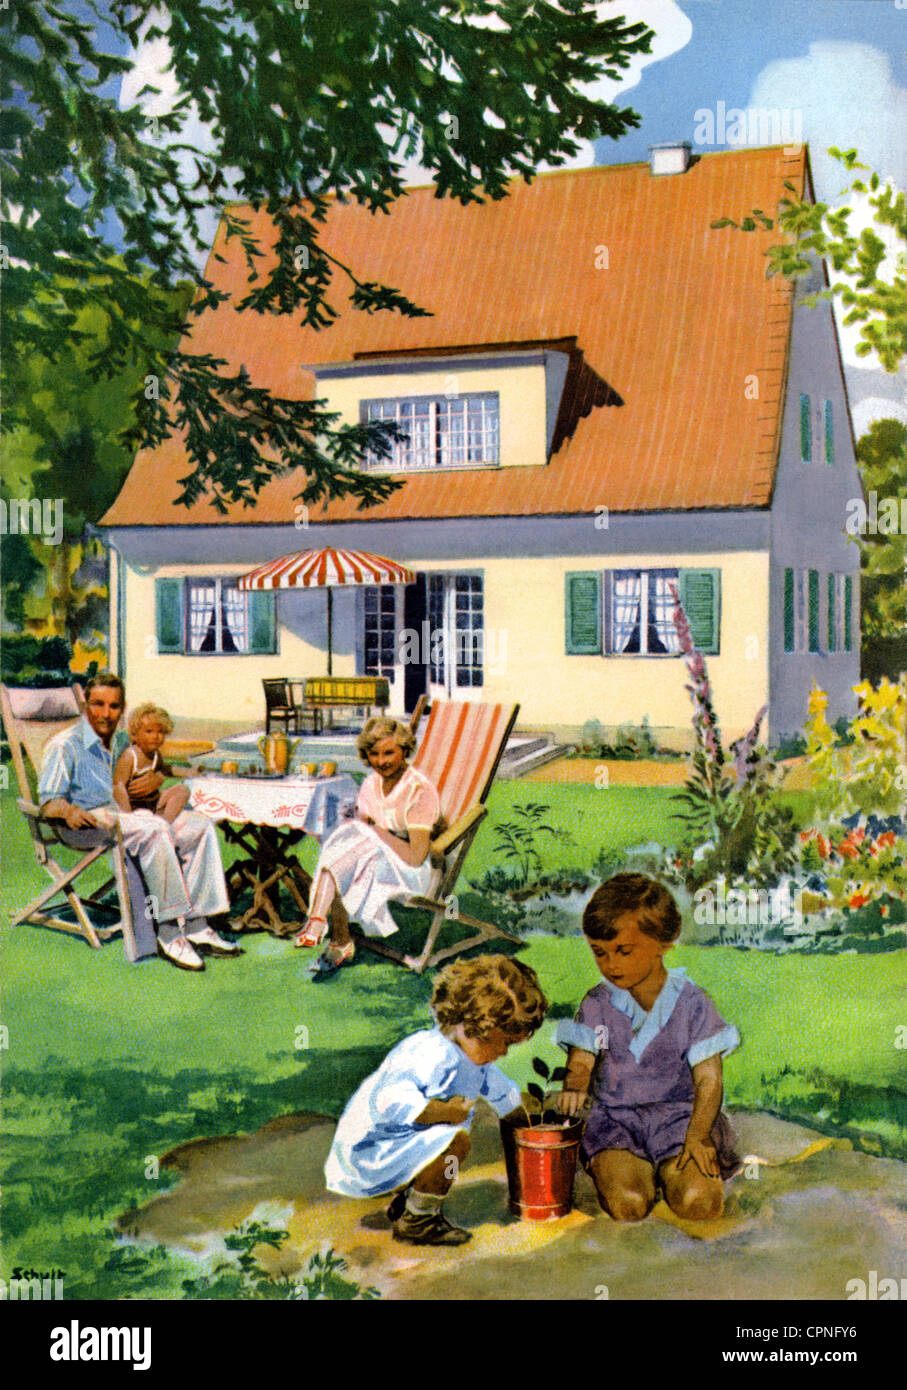 Wohnung, Haus, Familie, spielende Kinder, im Garten, Deutschland, um 1932, Zusatz-Rechte-Clearences-nicht vorhanden Stockfoto